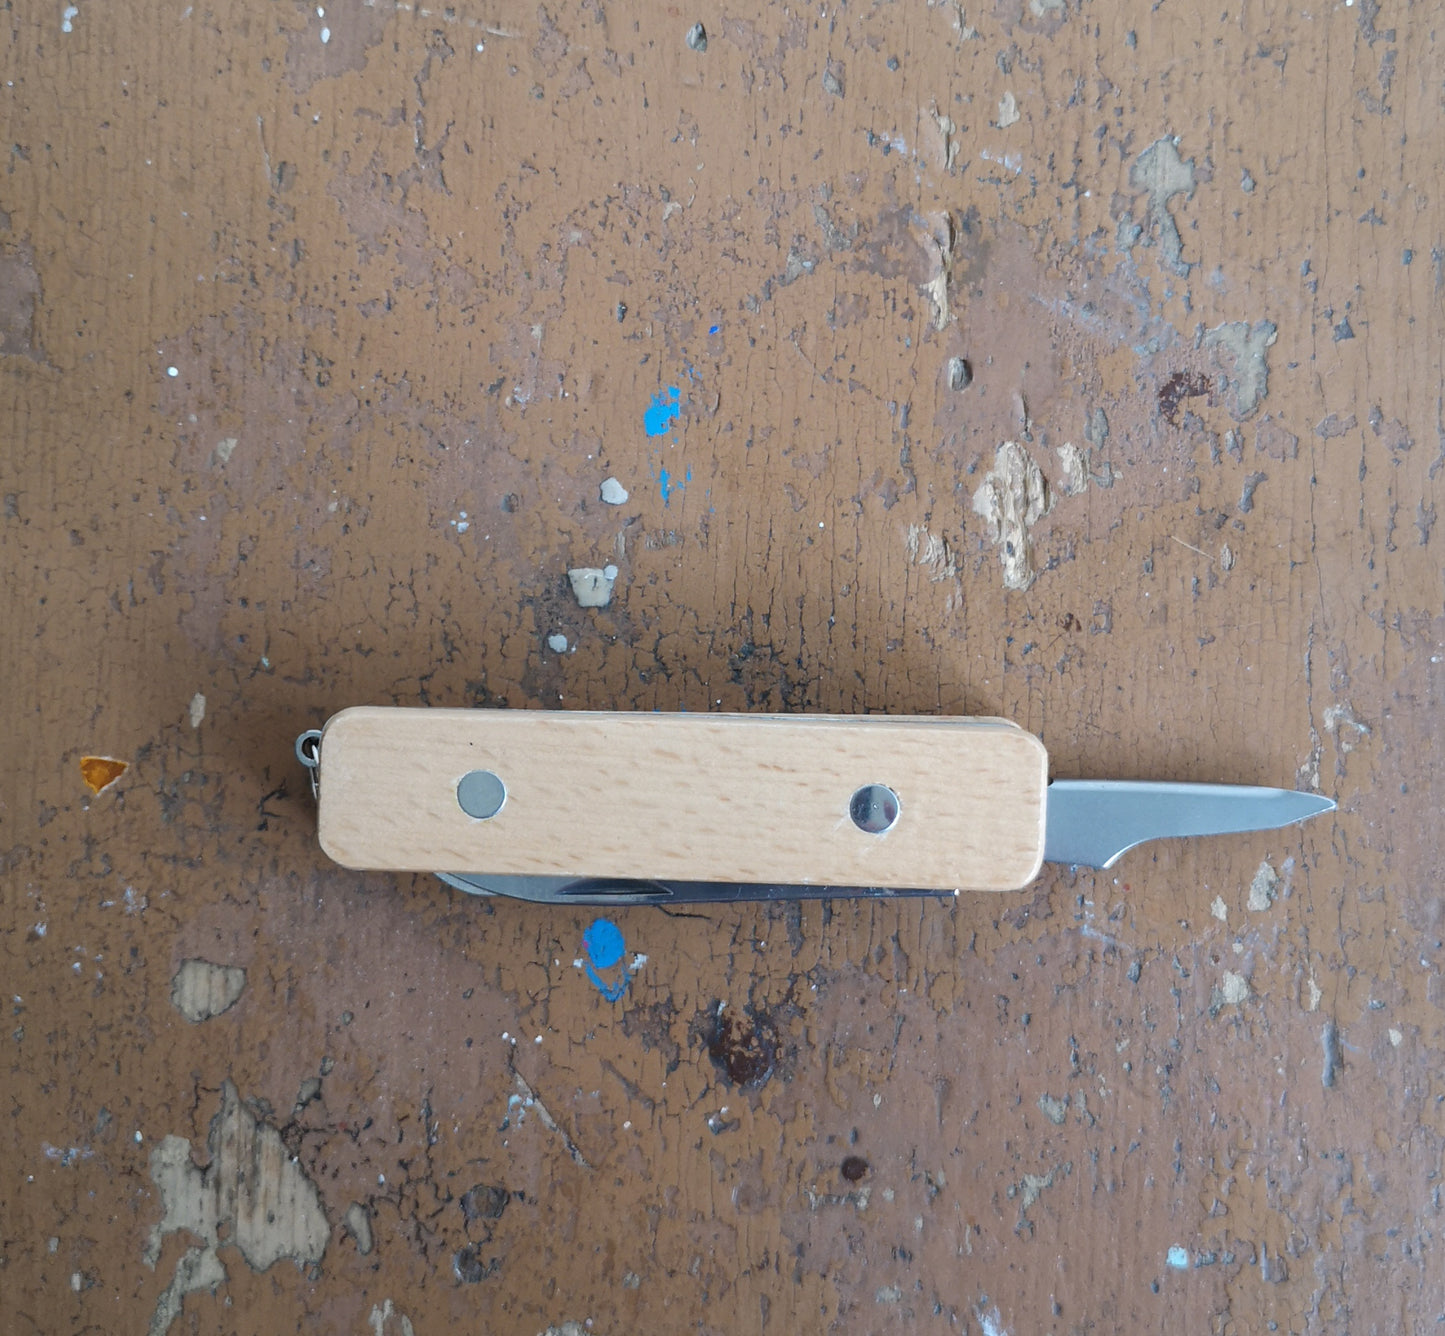 First pocket knife